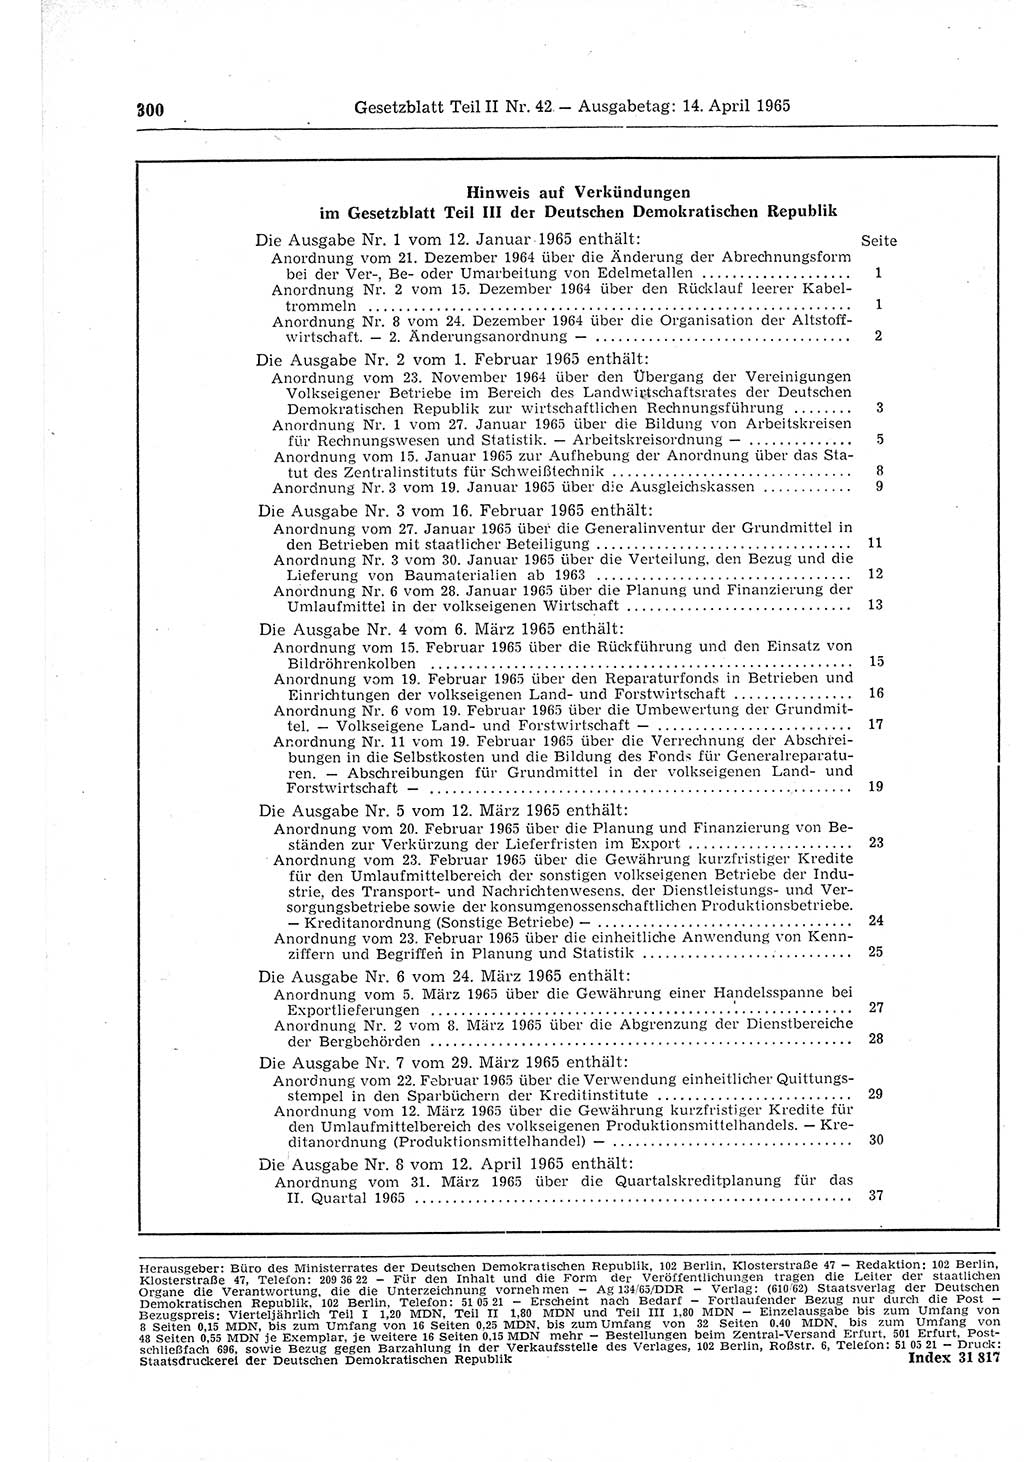 Gesetzblatt (GBl.) der Deutschen Demokratischen Republik (DDR) Teil ⅠⅠ 1965, Seite 300 (GBl. DDR ⅠⅠ 1965, S. 300)